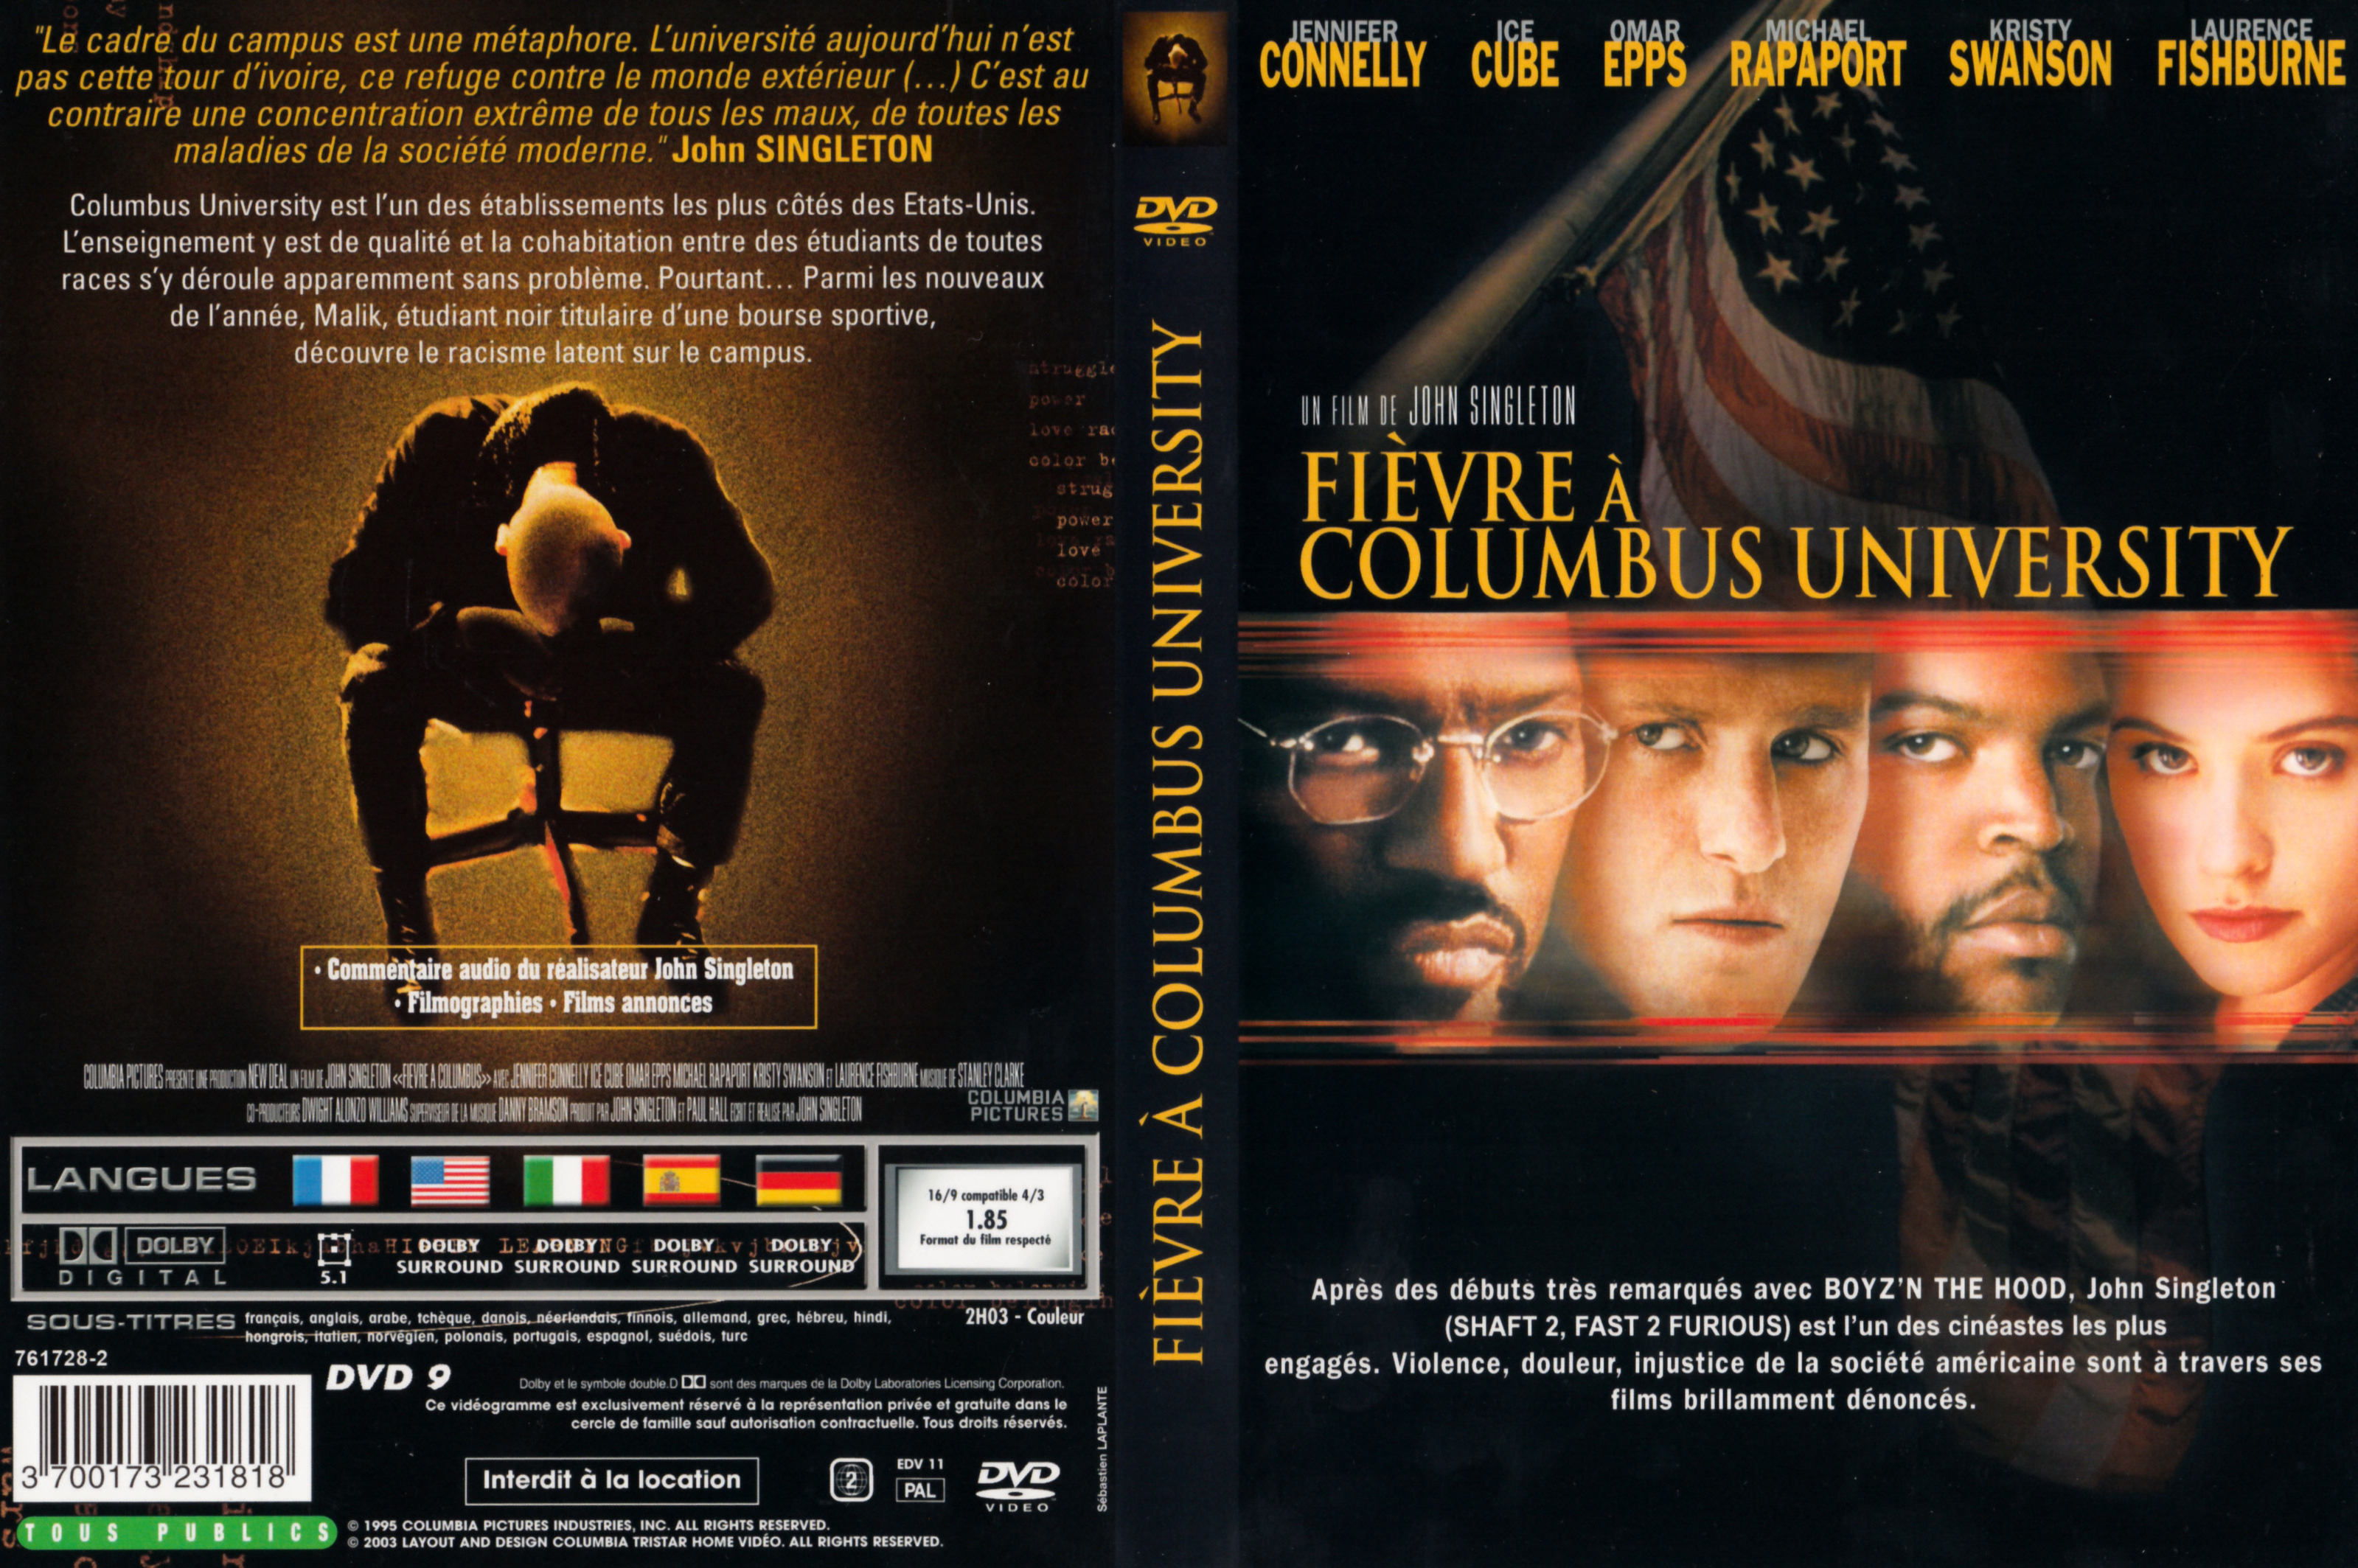 Jaquette DVD Fivre  Columbus University